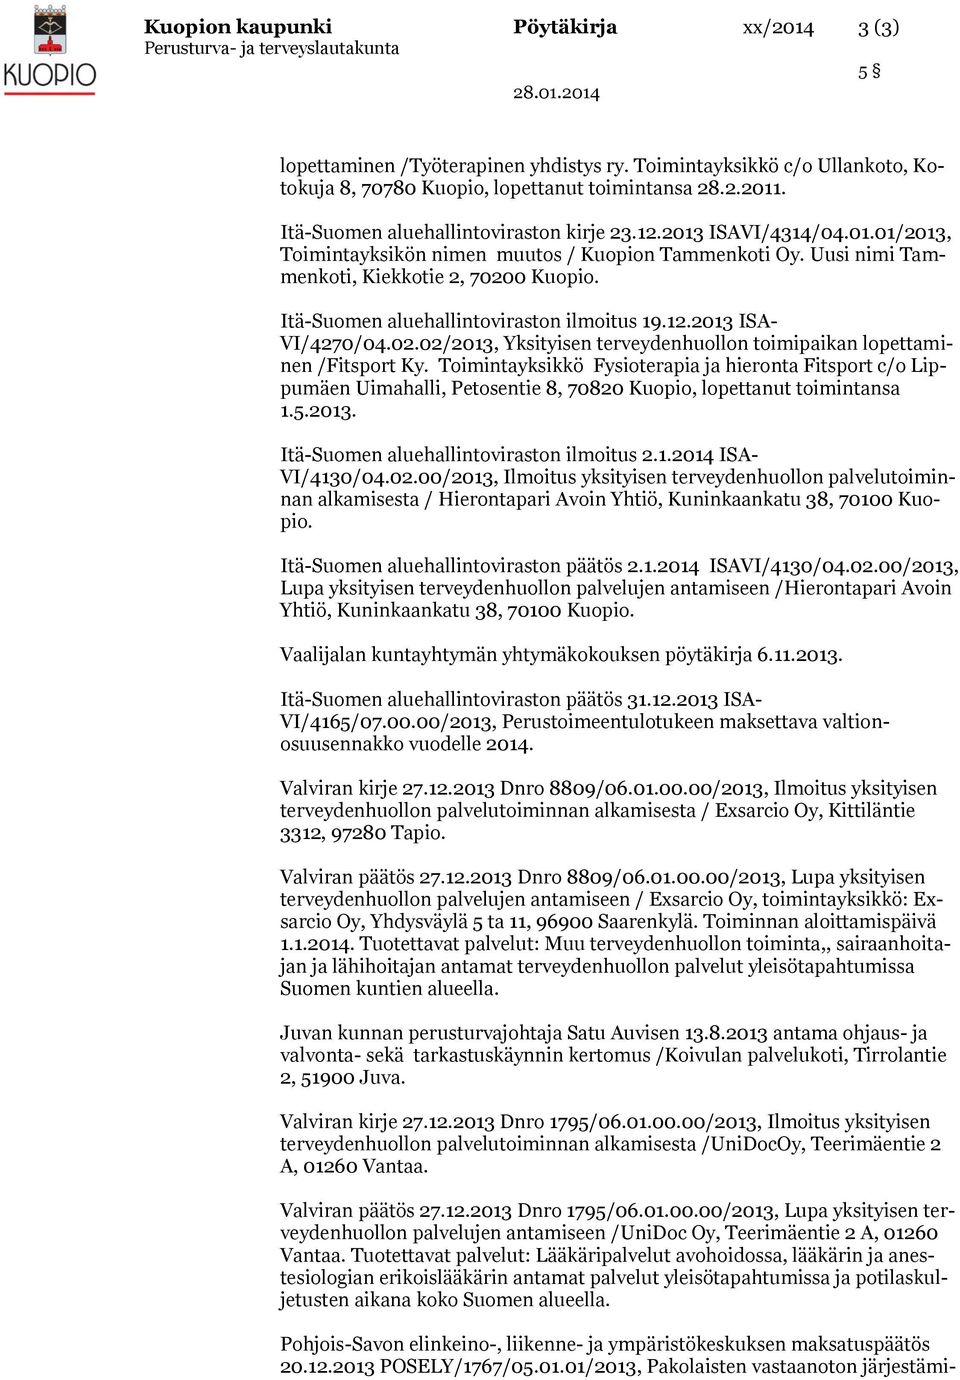 Itä-Suomen aluehallintoviraston ilmoitus 19.12.2013 ISA- VI/4270/04.02.02/2013, Yksityisen terveydenhuollon toimipaikan lopettaminen /Fitsport Ky.